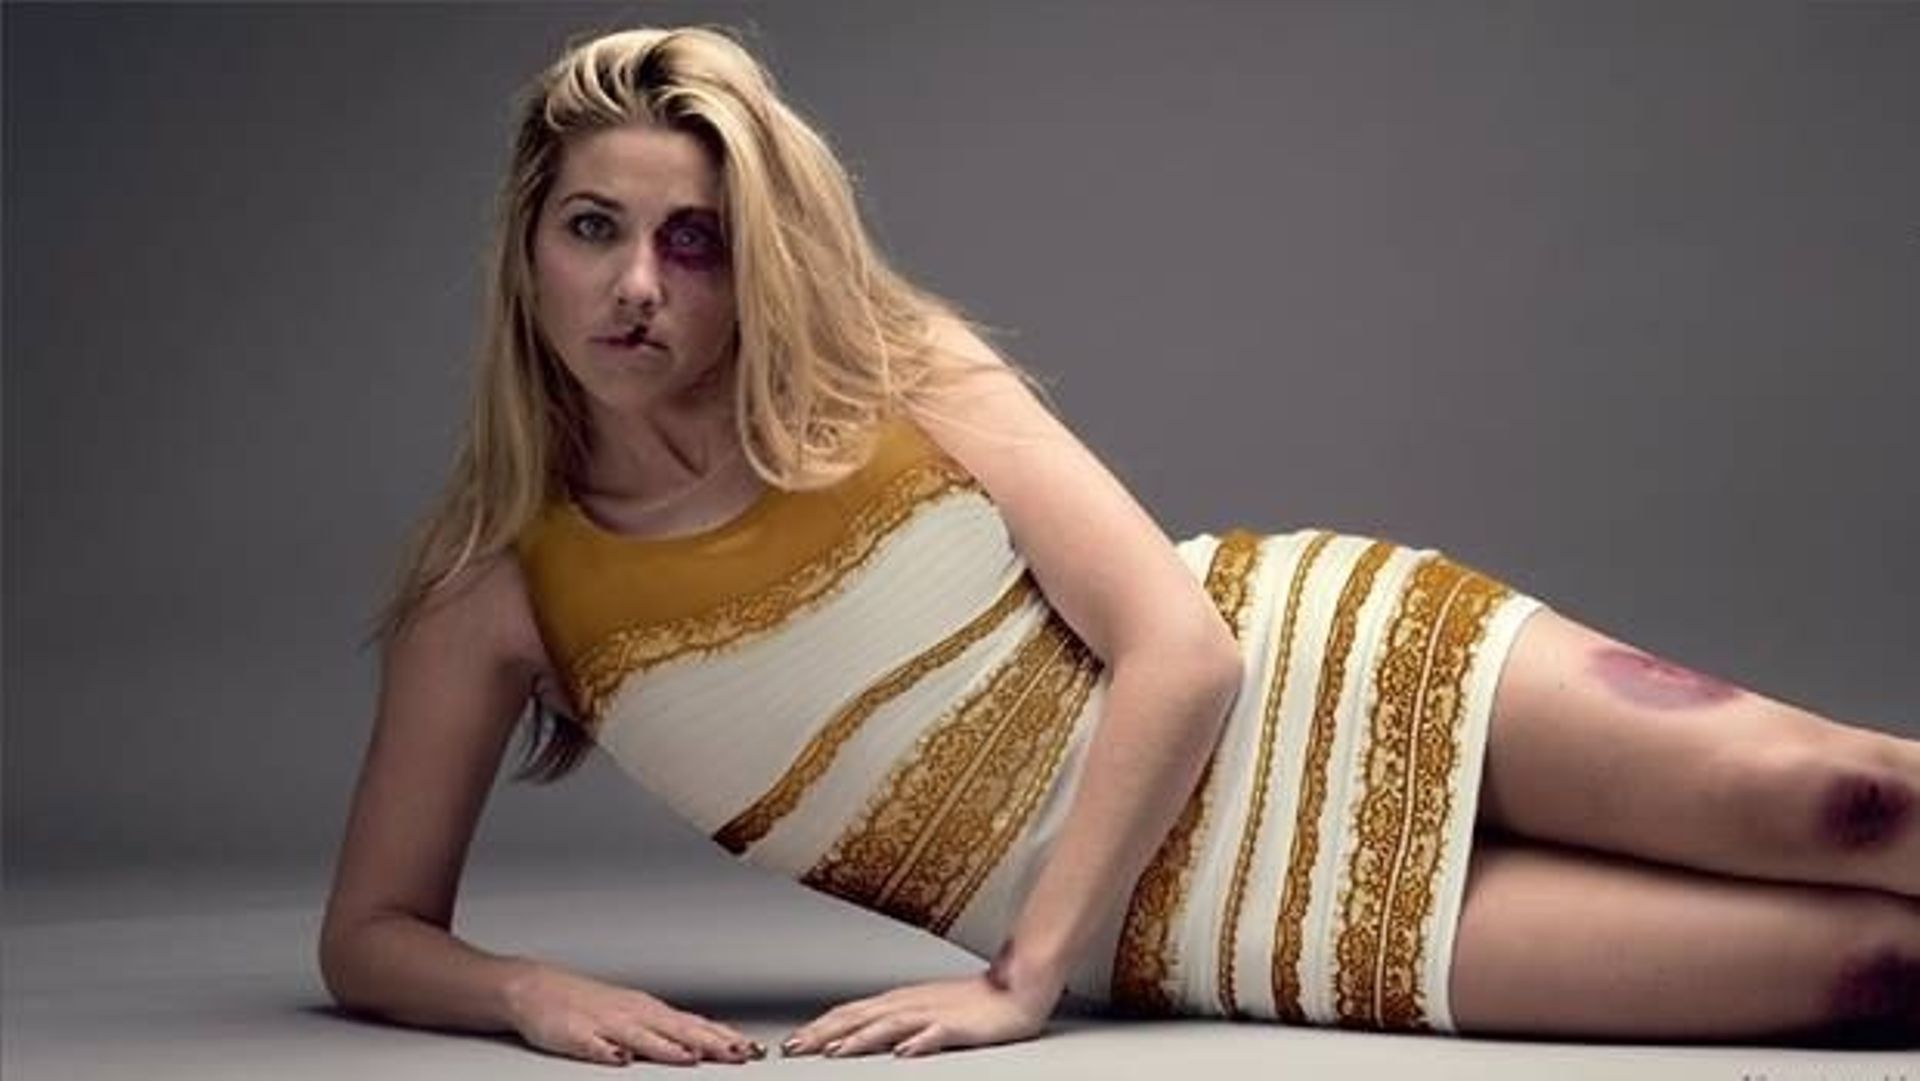 La fameuse robe détournée pour une campagne puissante contre la violence faite aux femmes